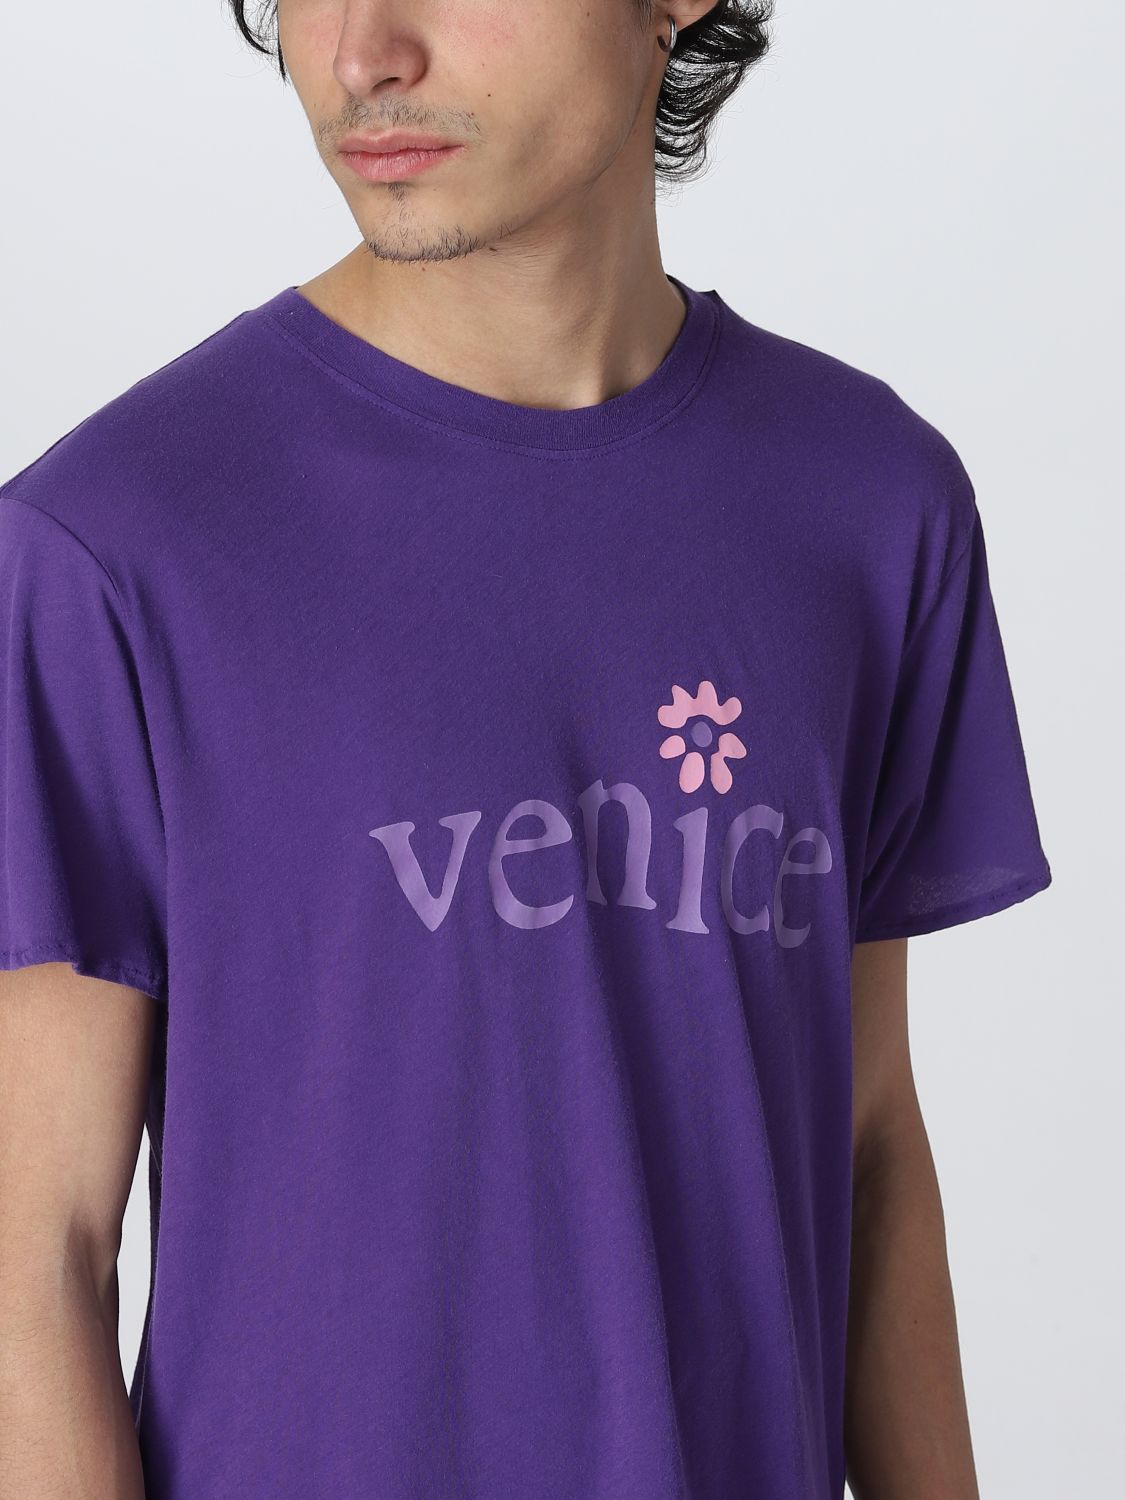 T恤 Erl: Erlt恤男士 紫色 5